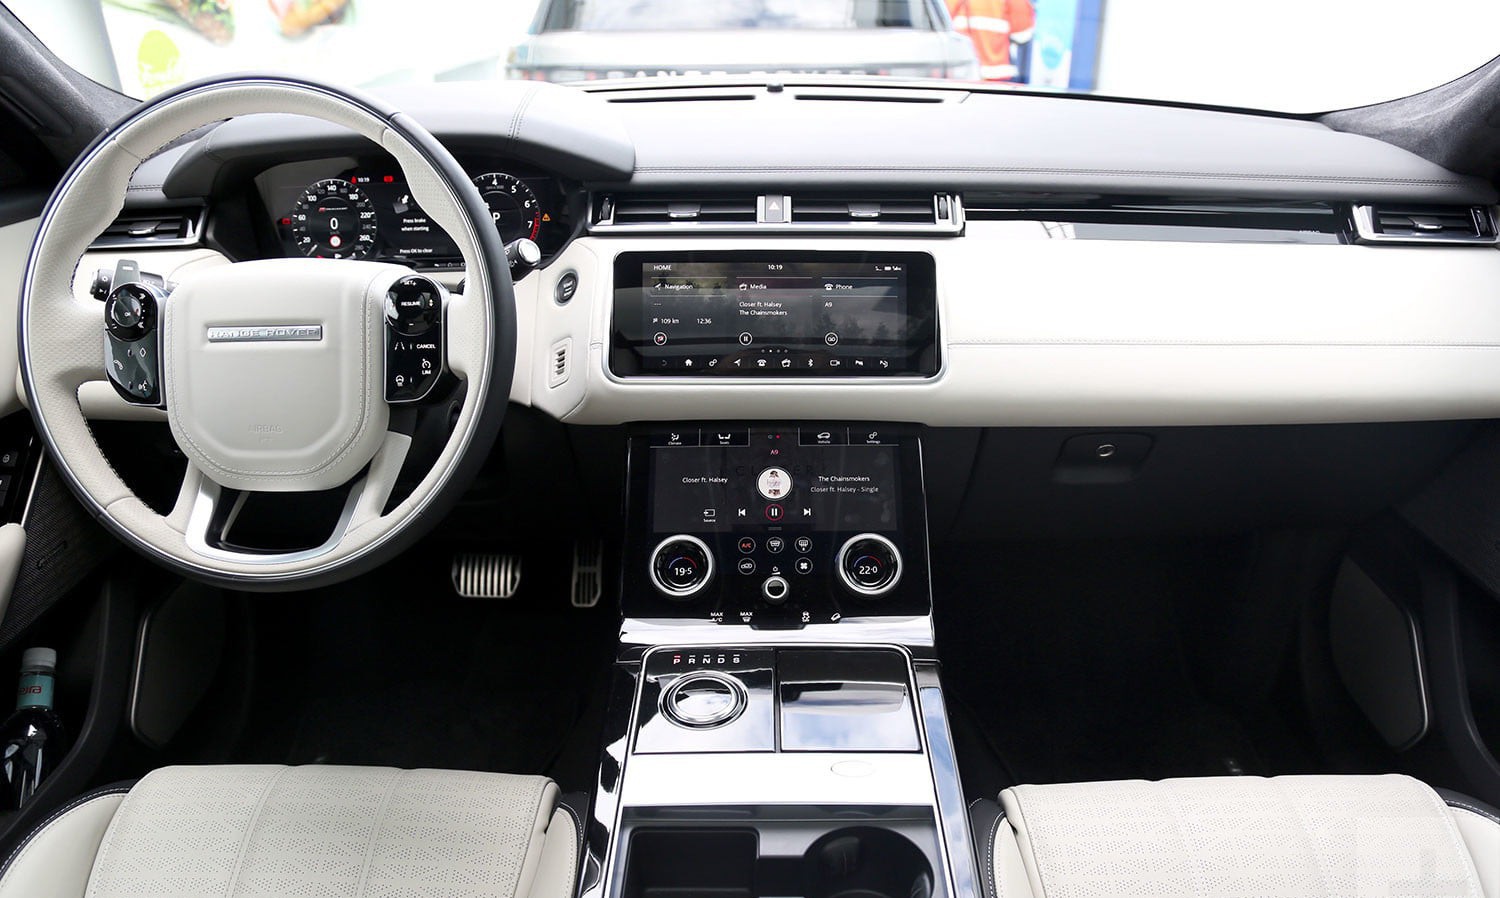 Range Rover Velar First Edition là dòng xe độc đáo với những tính năng và thiết kế nội thất đặc biệt. Hãy khám phá những chi tiết độc đáo và tinh tế của chiếc xe này bằng những hình ảnh chất lượng cao.